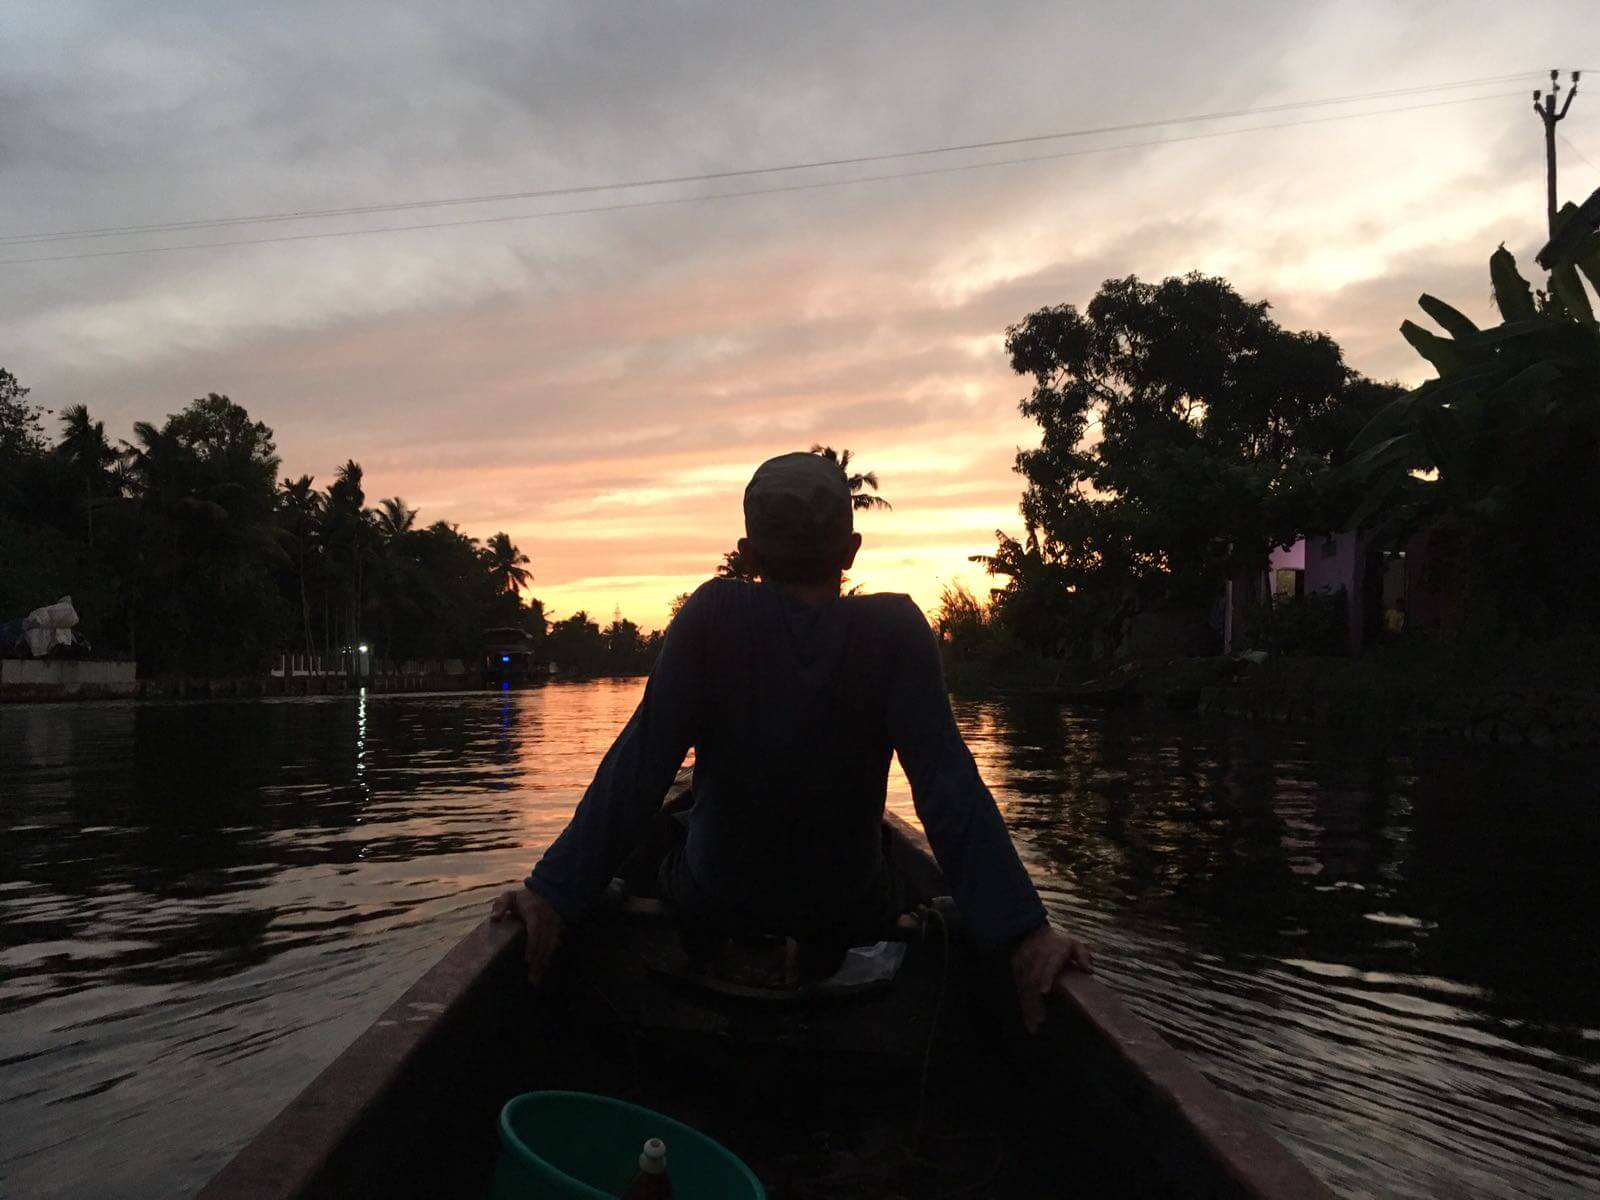 Sonnenuntergang als Abschluss einer entspannten Tour auf den Backwaters in Indien